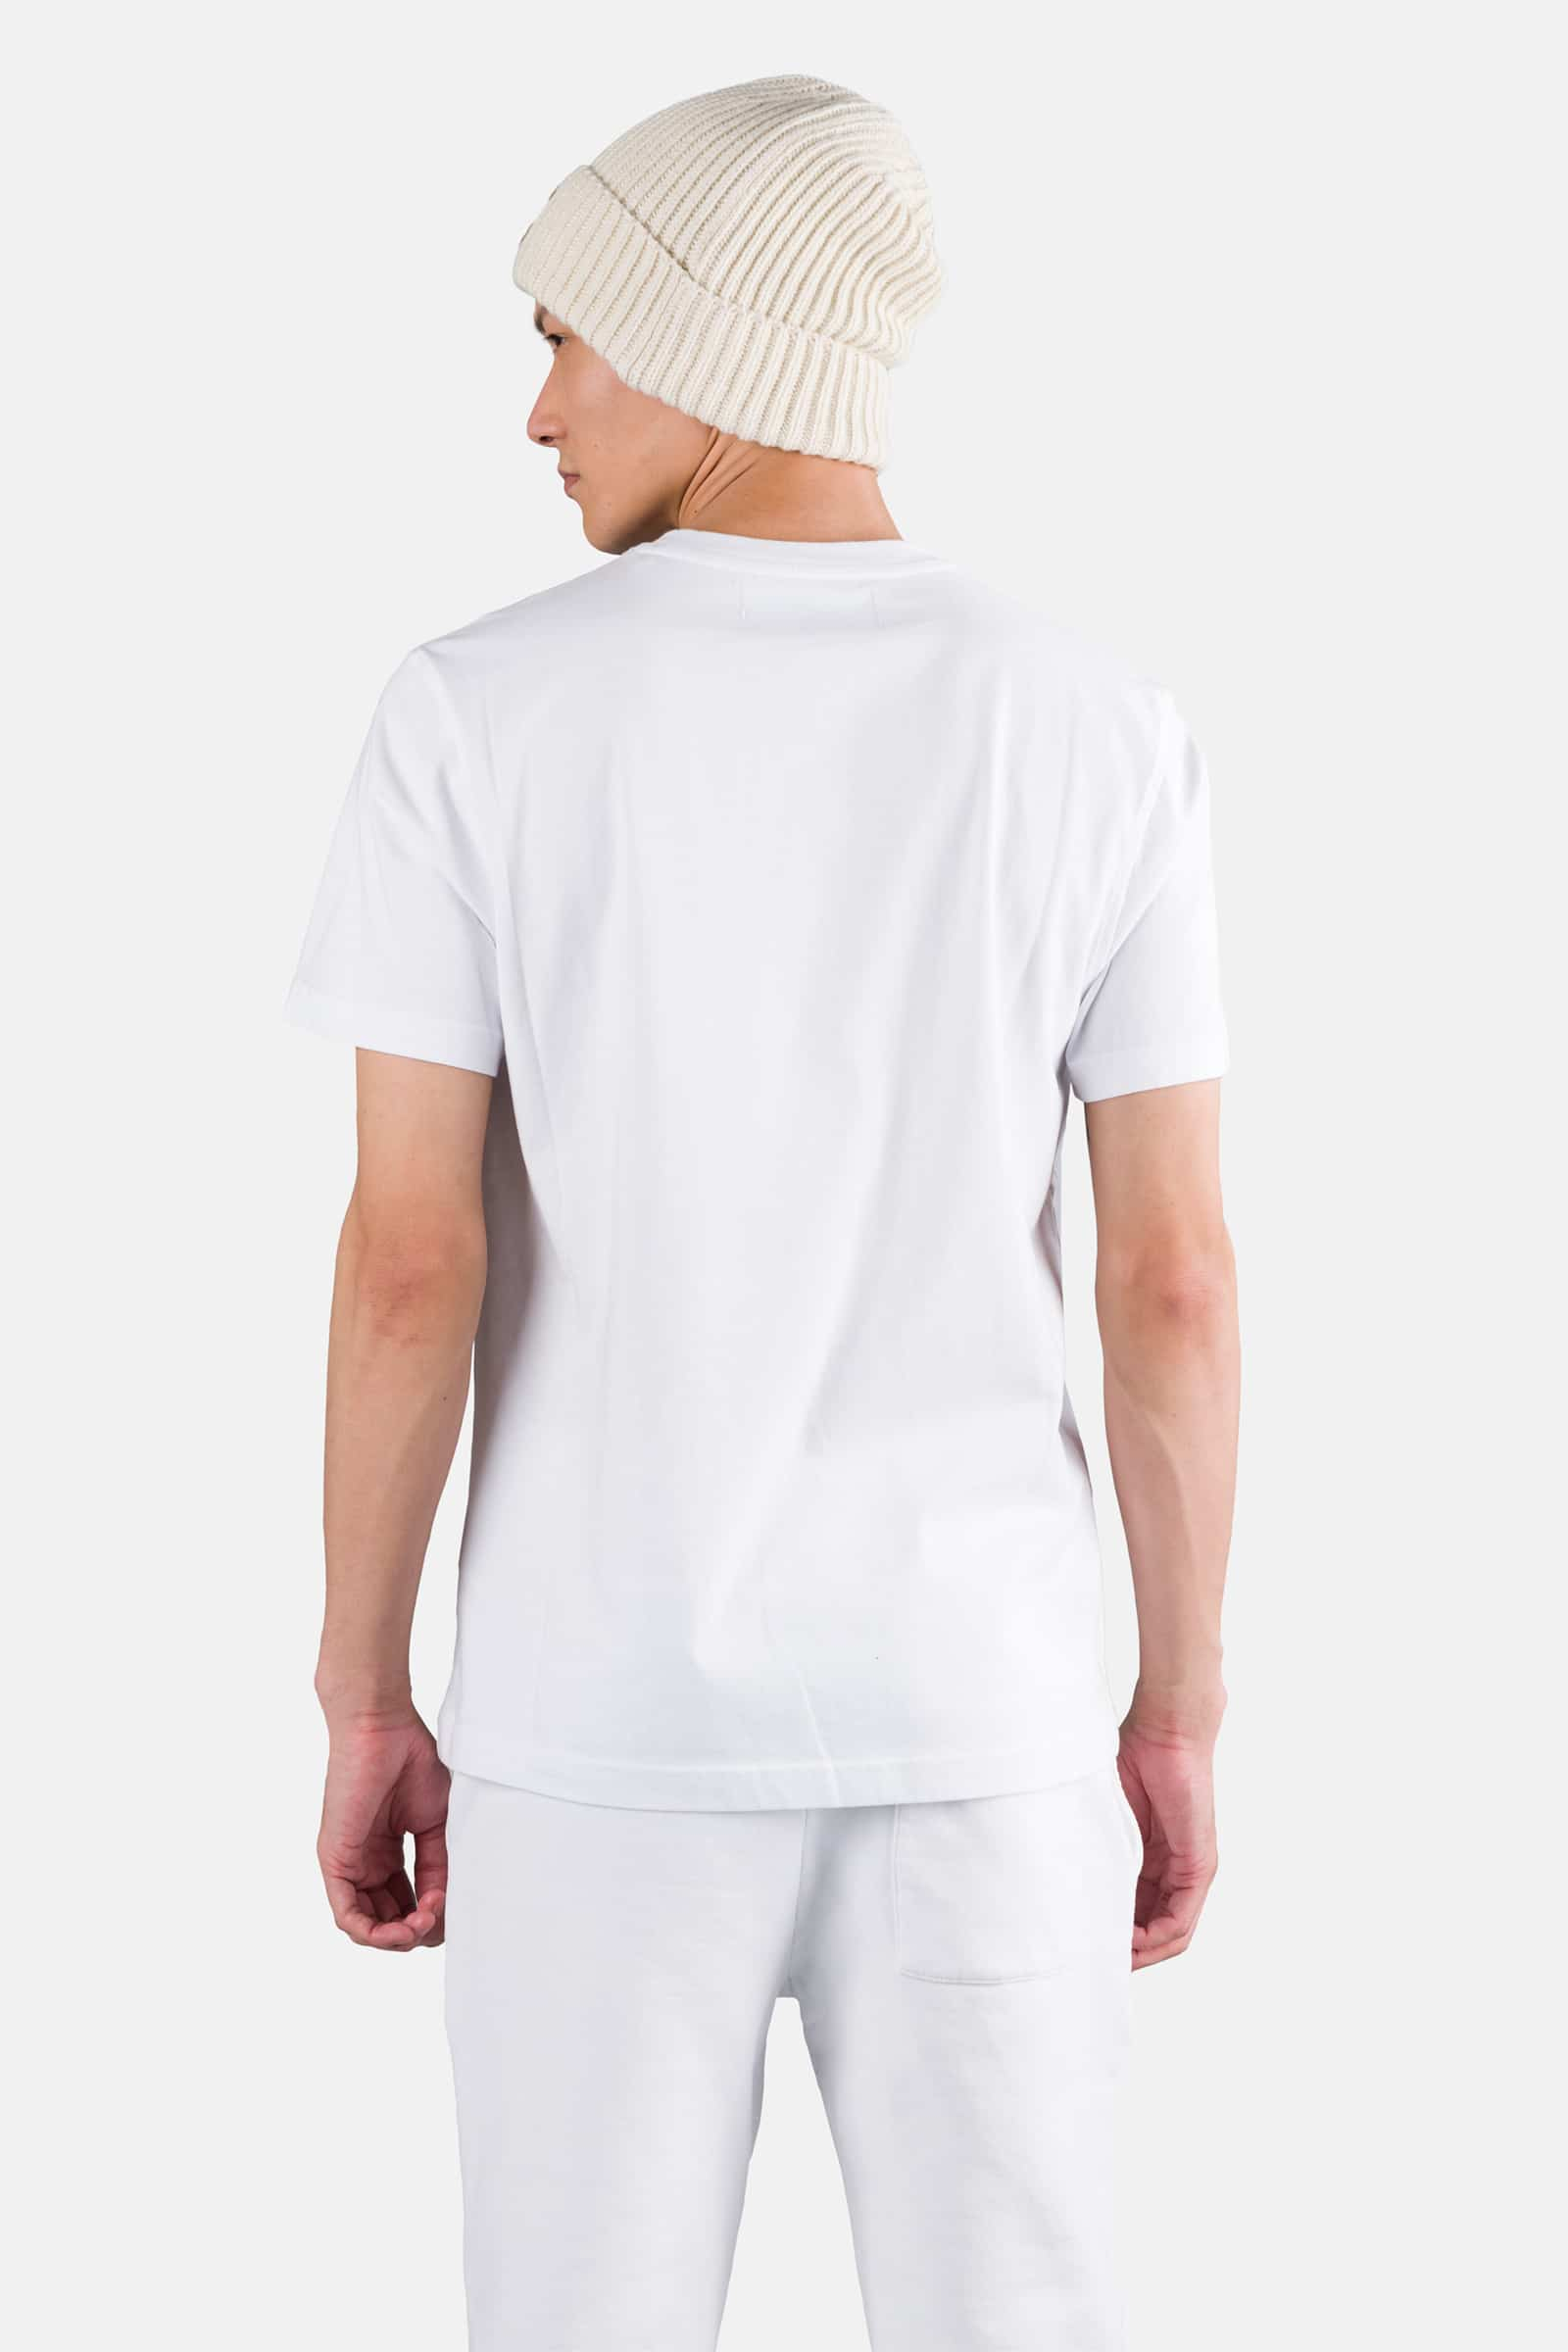 SKULL TEE - WHITE - Hydrogen - Luxury Sportwear